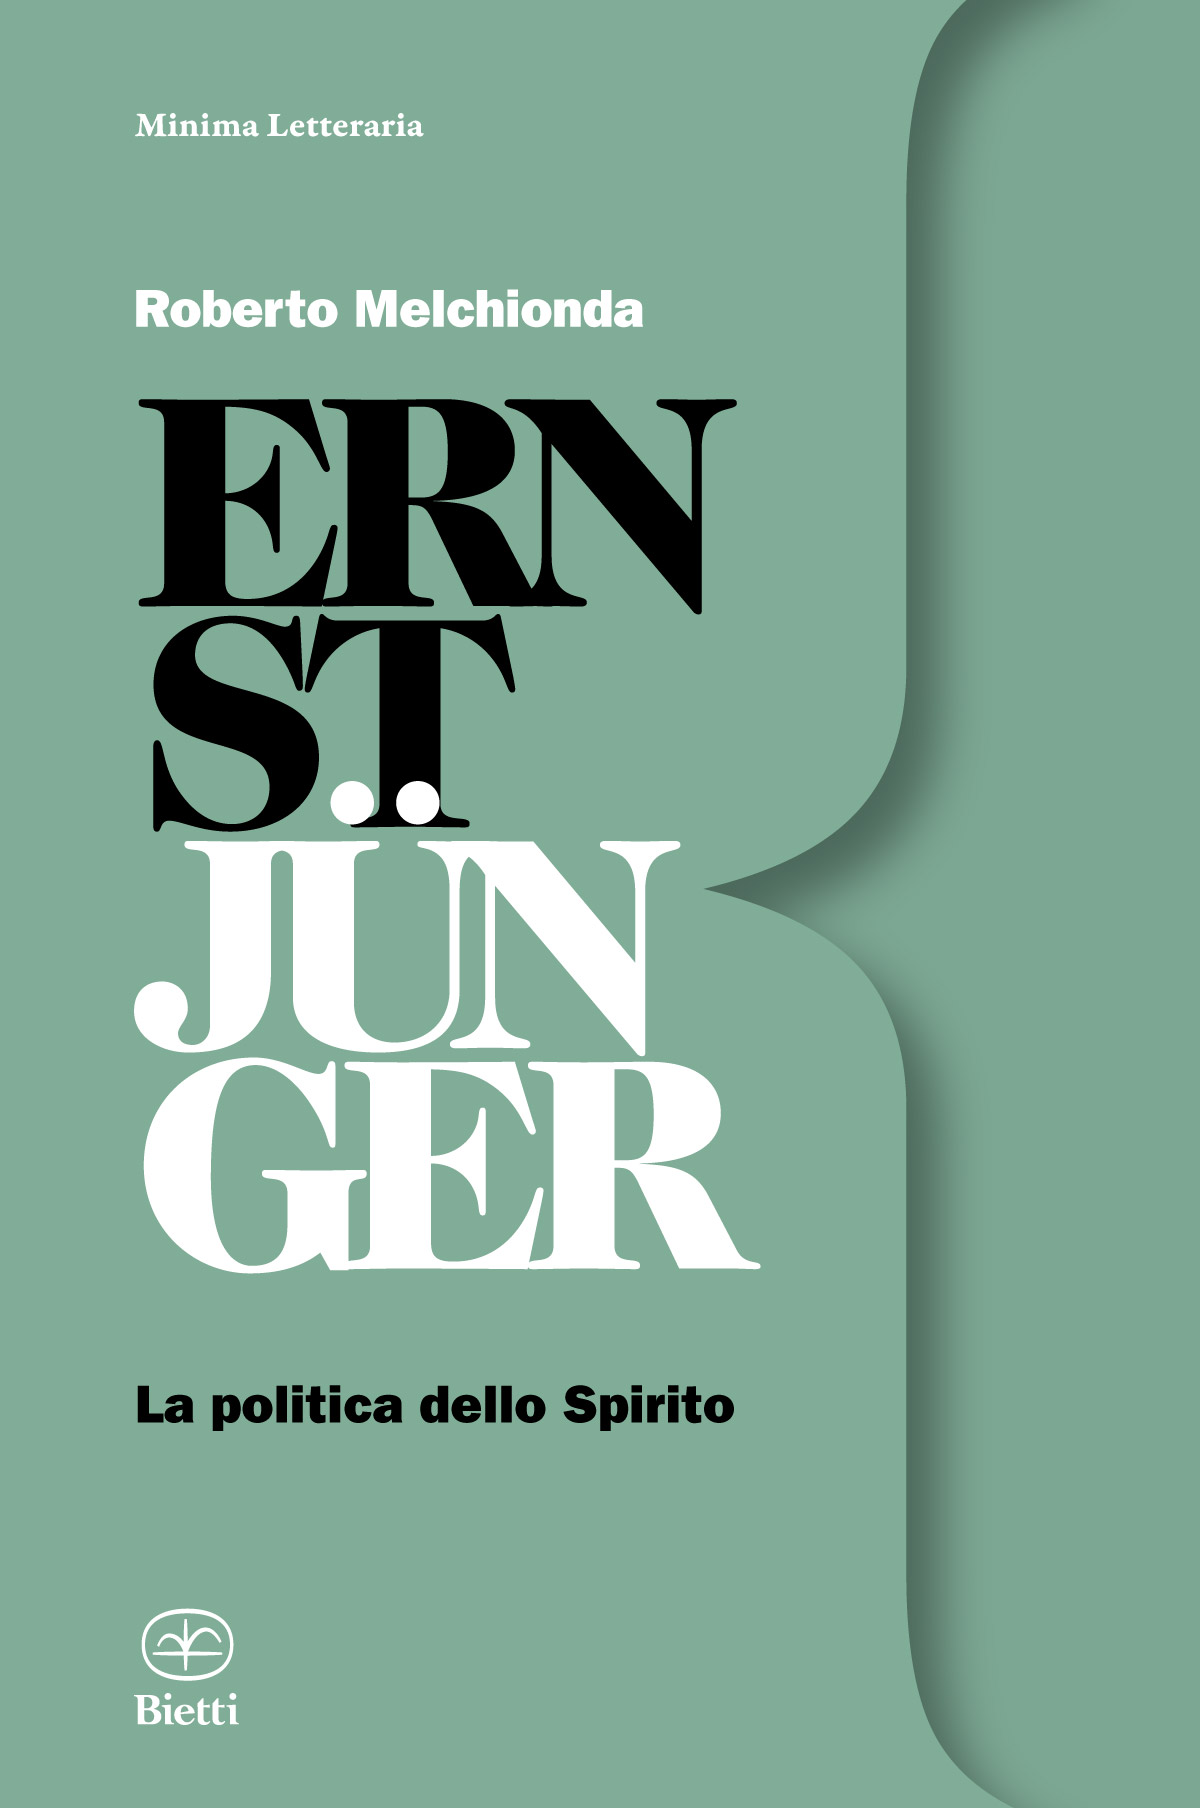 Jünger, Melchionda: la politica dello Spirito